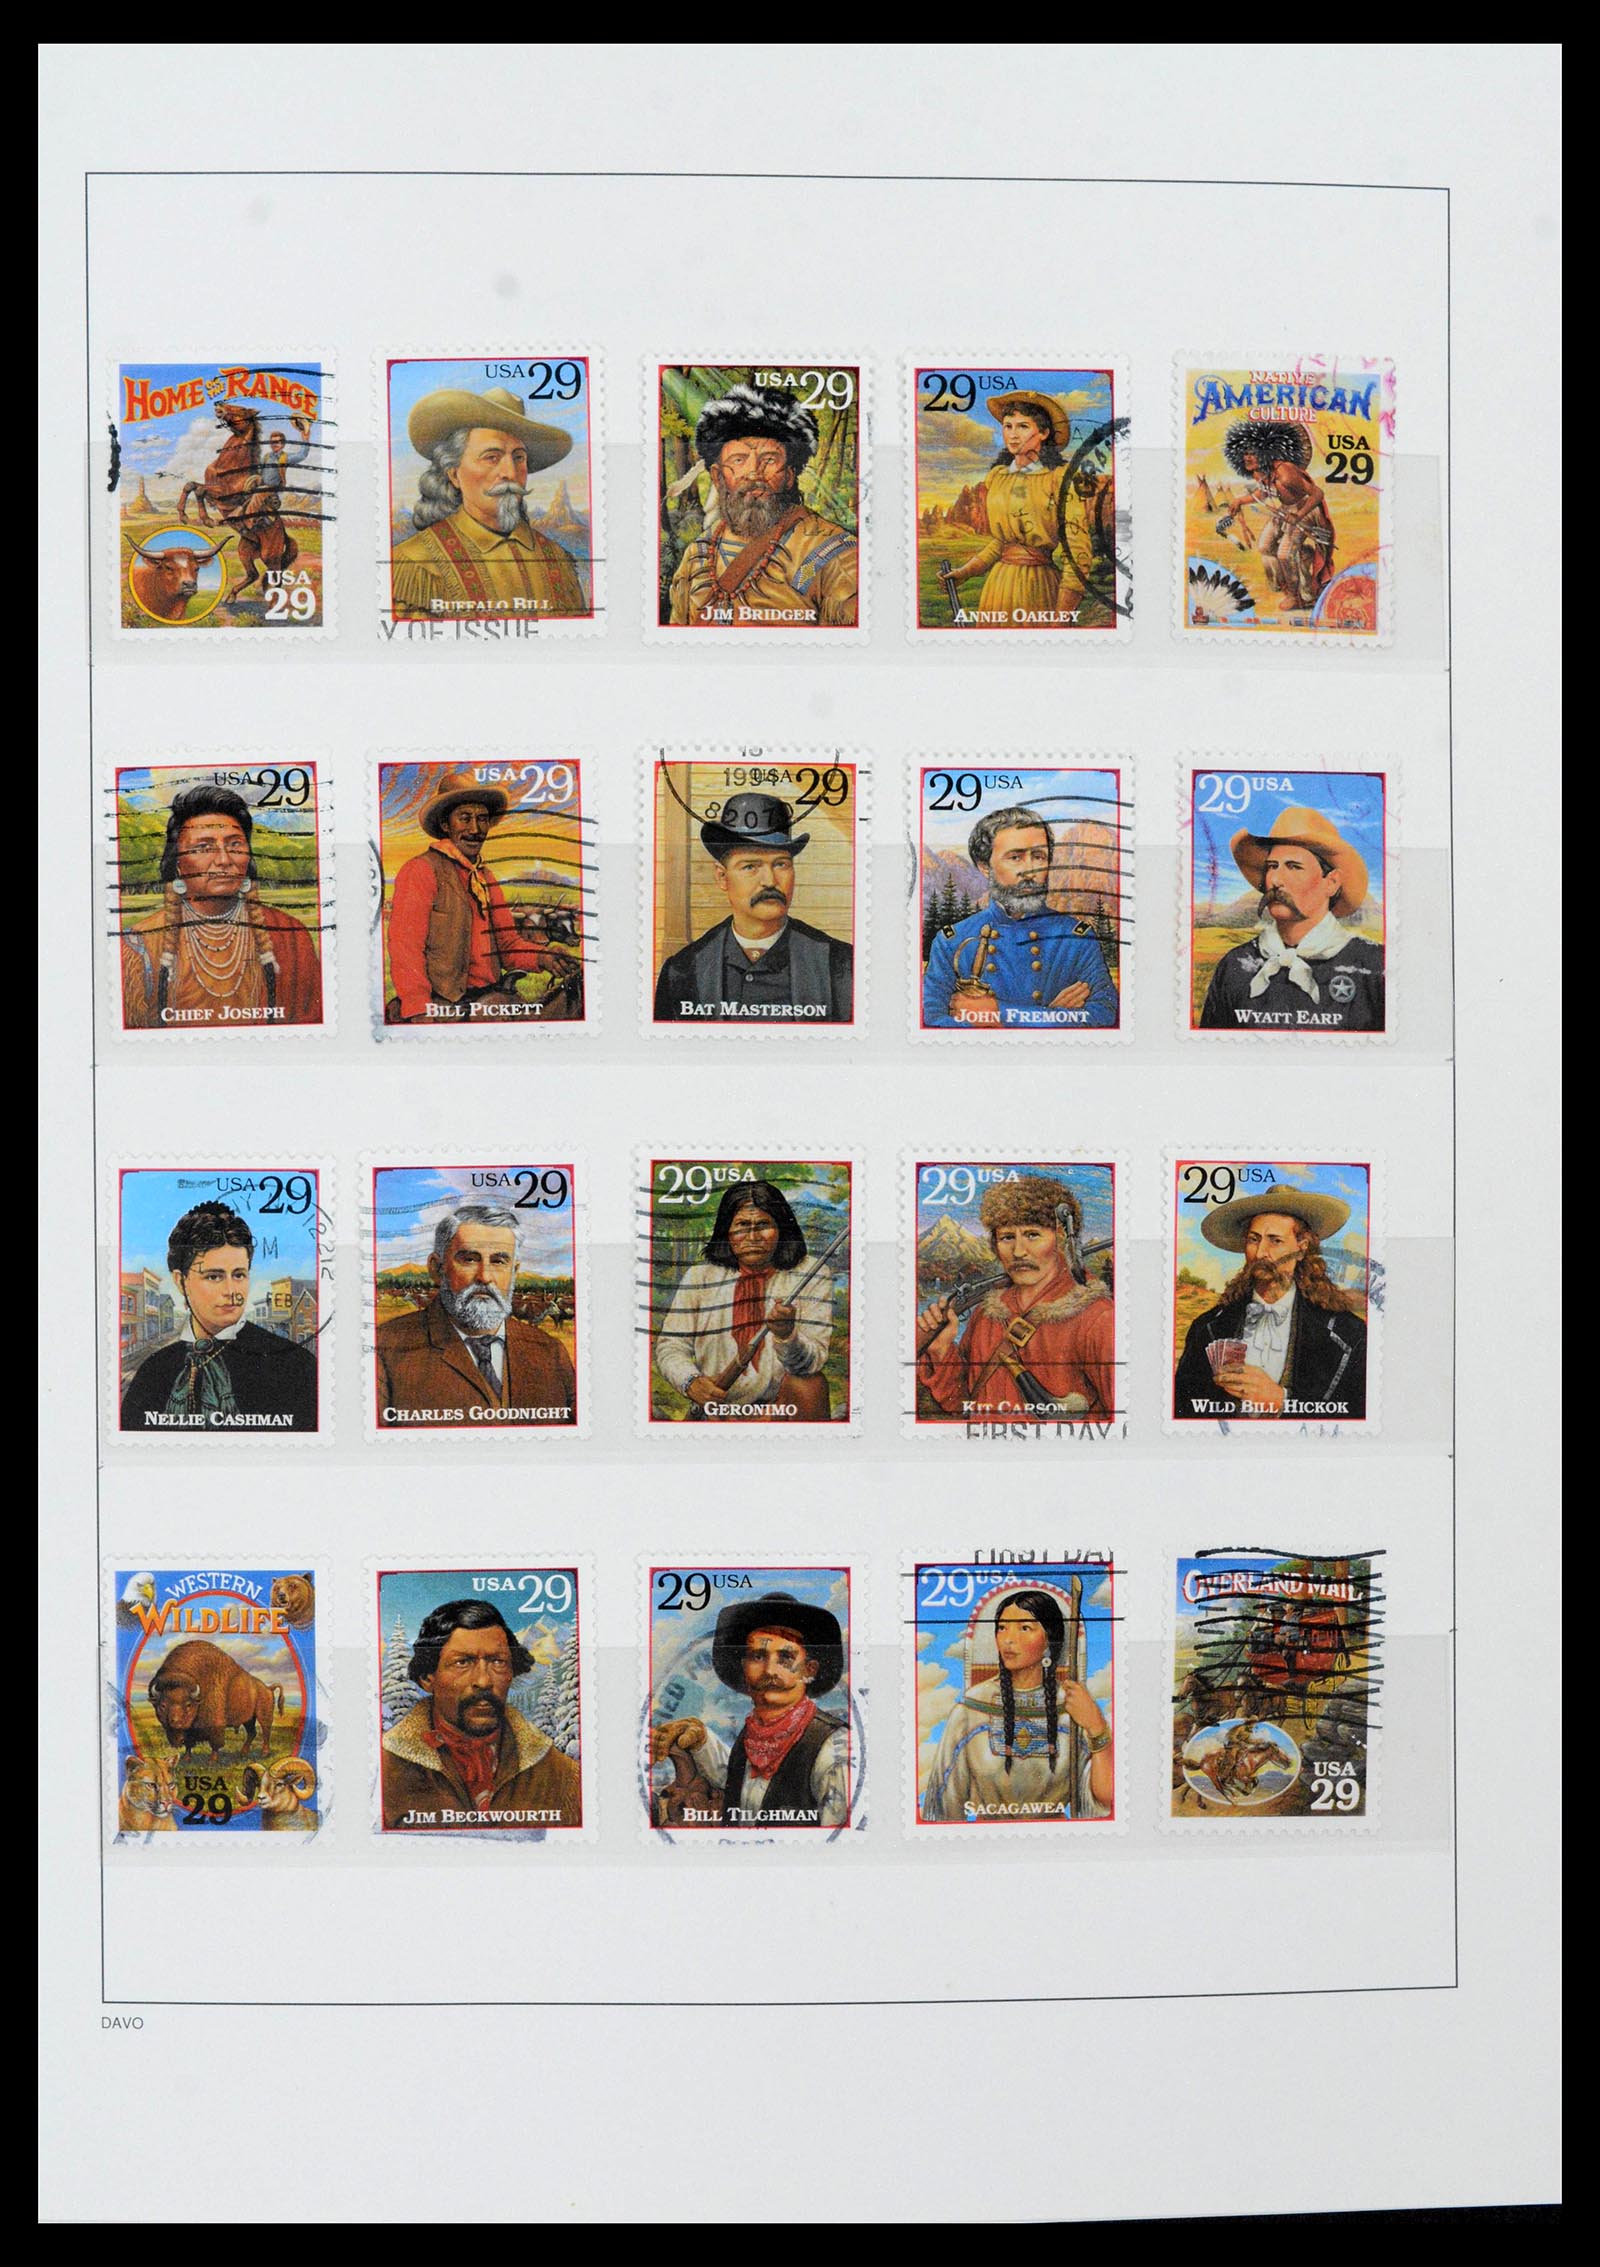 39349 0051 - Stamp collection 39349 USA 1989-2021!